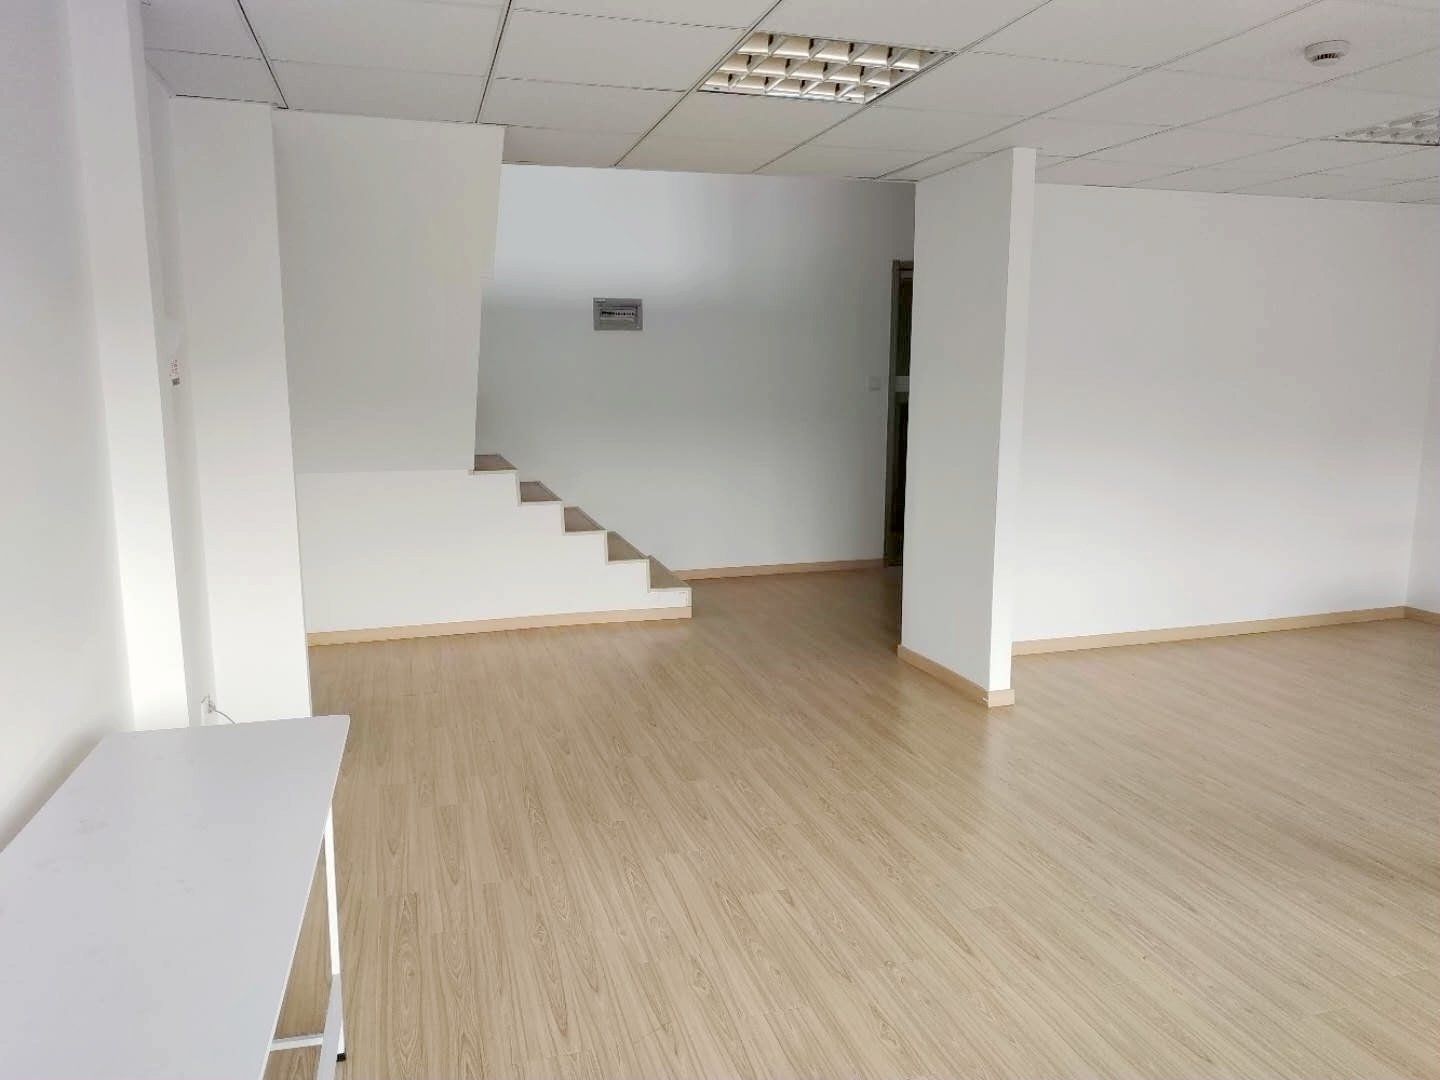 福克斯科技园76平米办公室出租-租金价格2.53元/m²/天